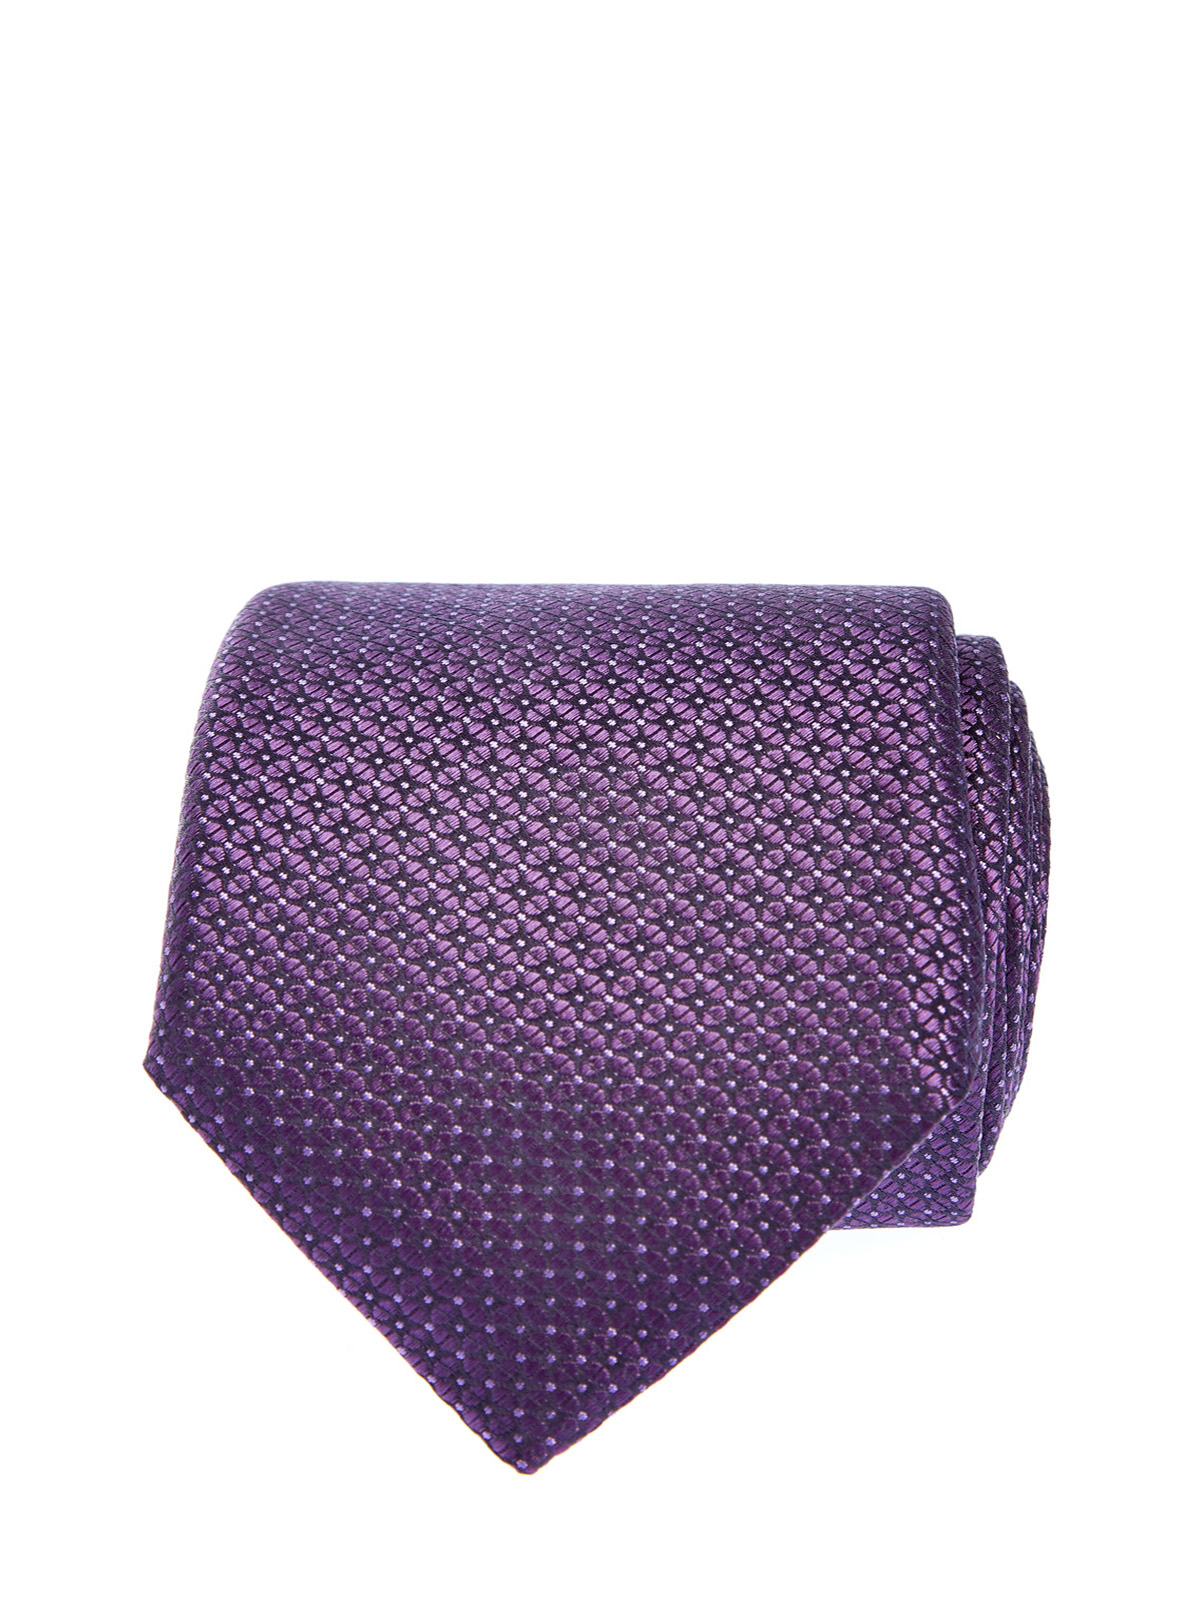 Шелковый галстук с объемным жаккардовым принтом CANALI, цвет фиолетовый, размер 41;41.5;42;42.5;43;43.5;44